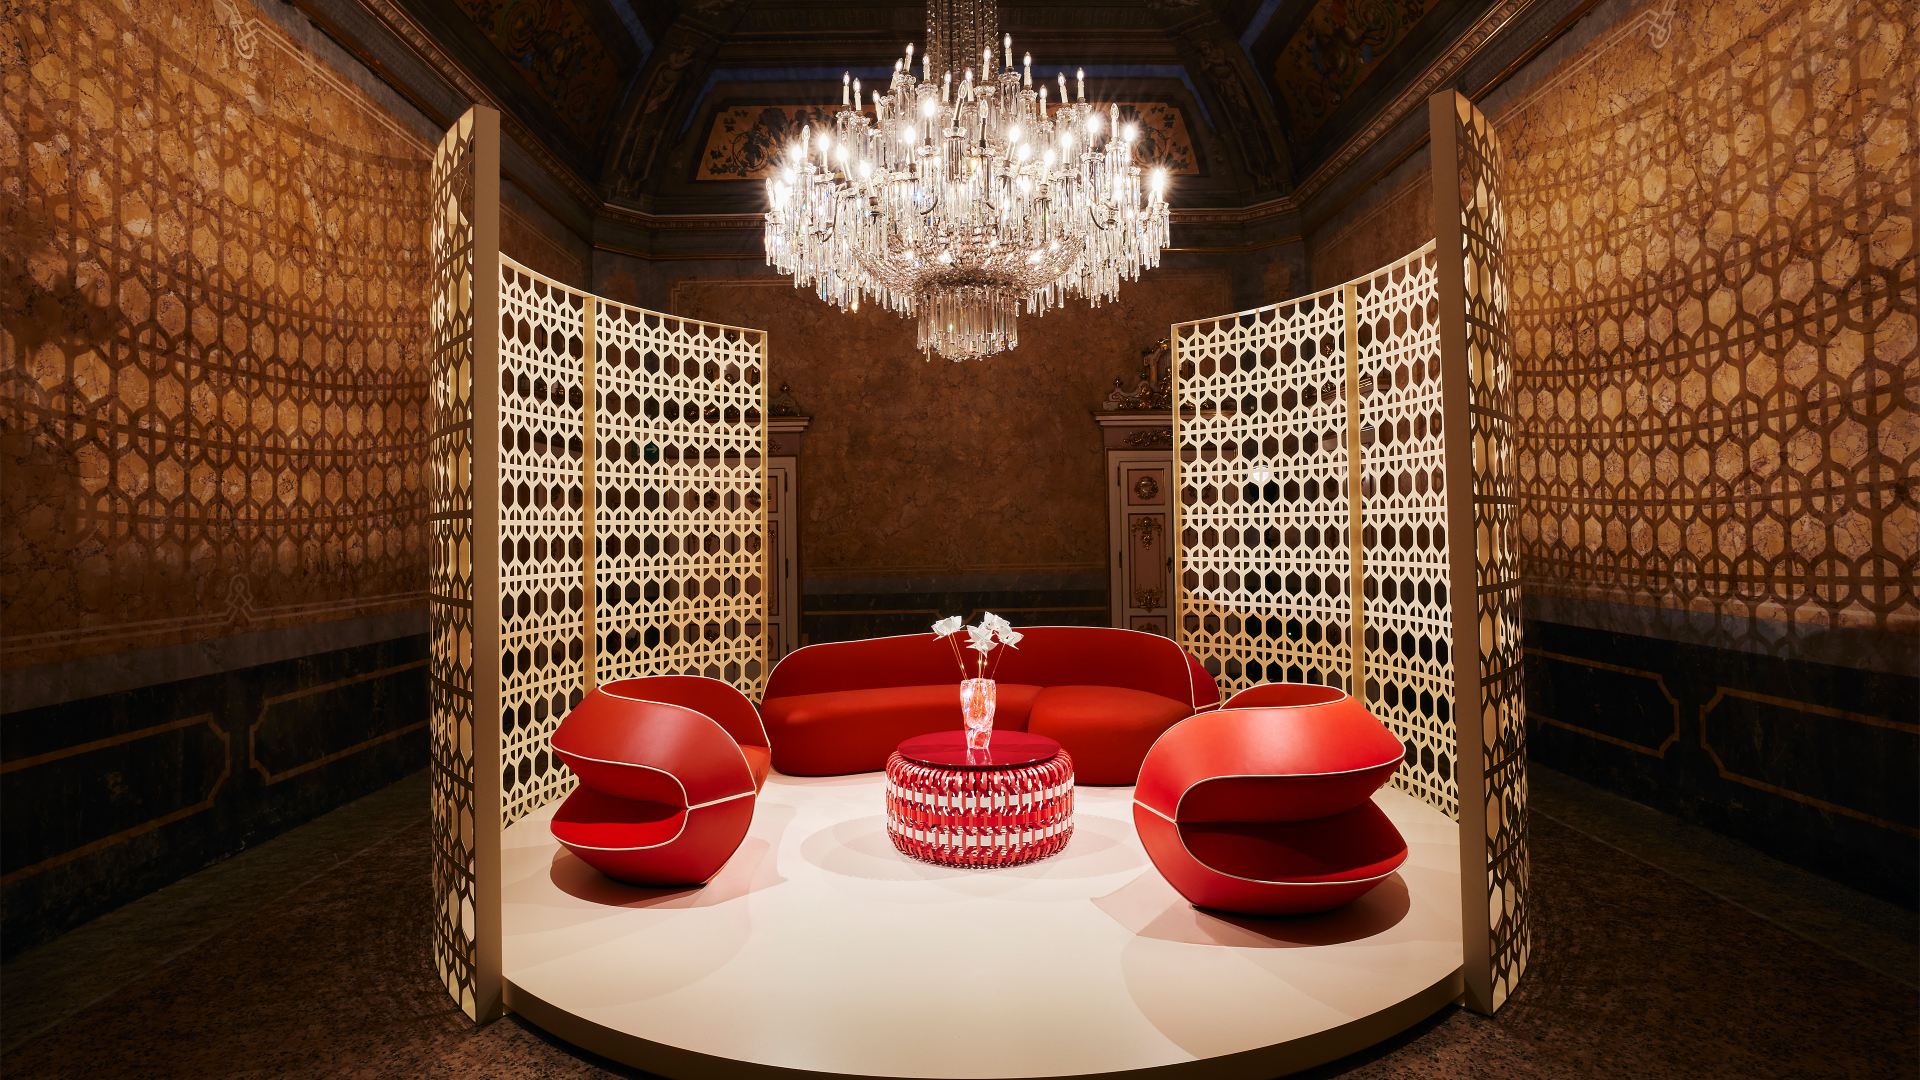 Biombo em off white destaca as formas e o tom coral do mobiliário na Louis Vuitton